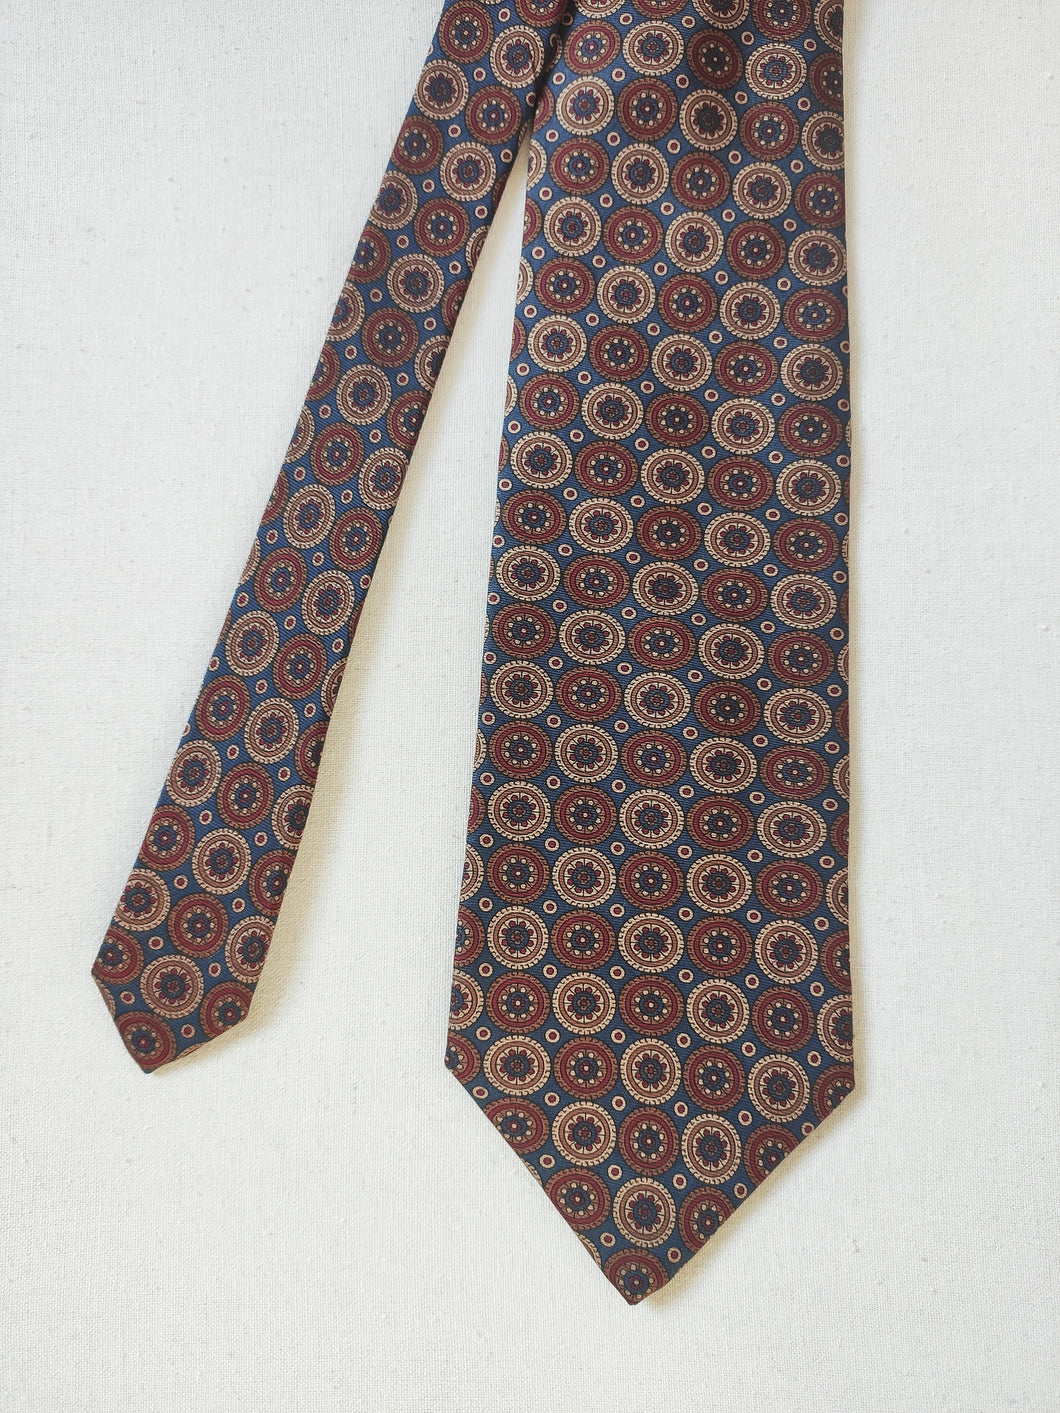 Cravate vintage en soie Made in Italy